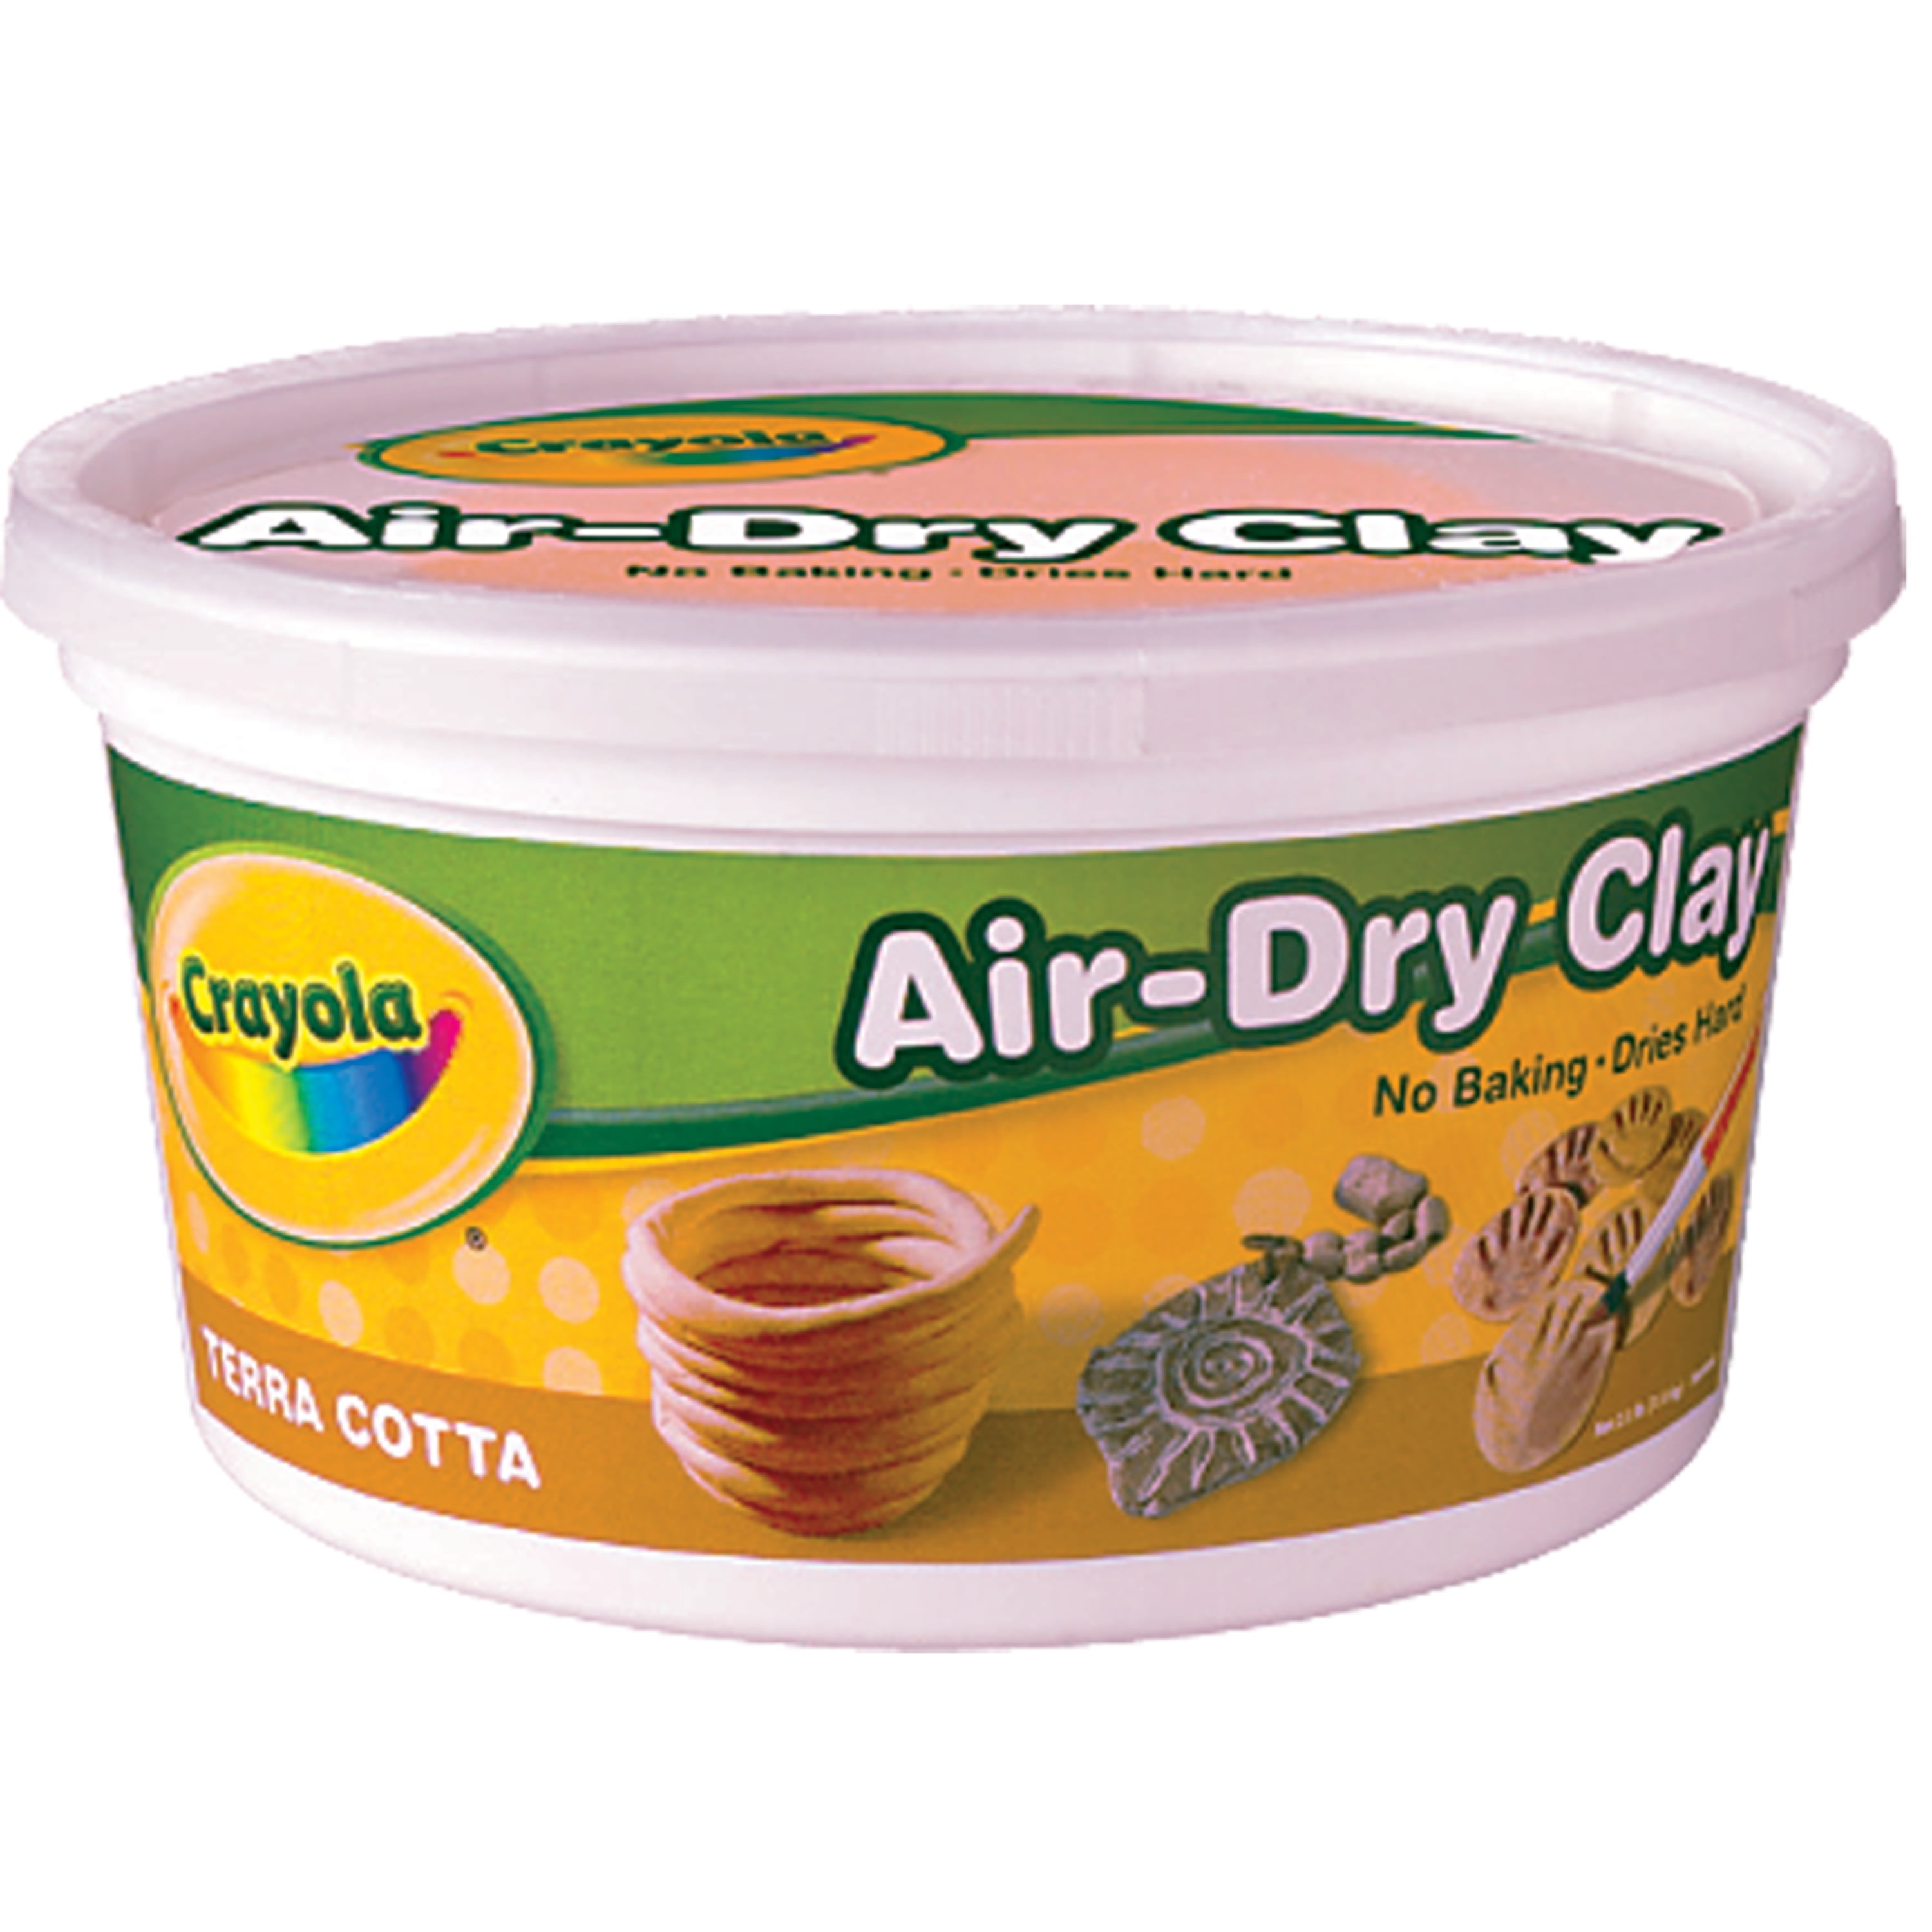 air dry clay terracotta